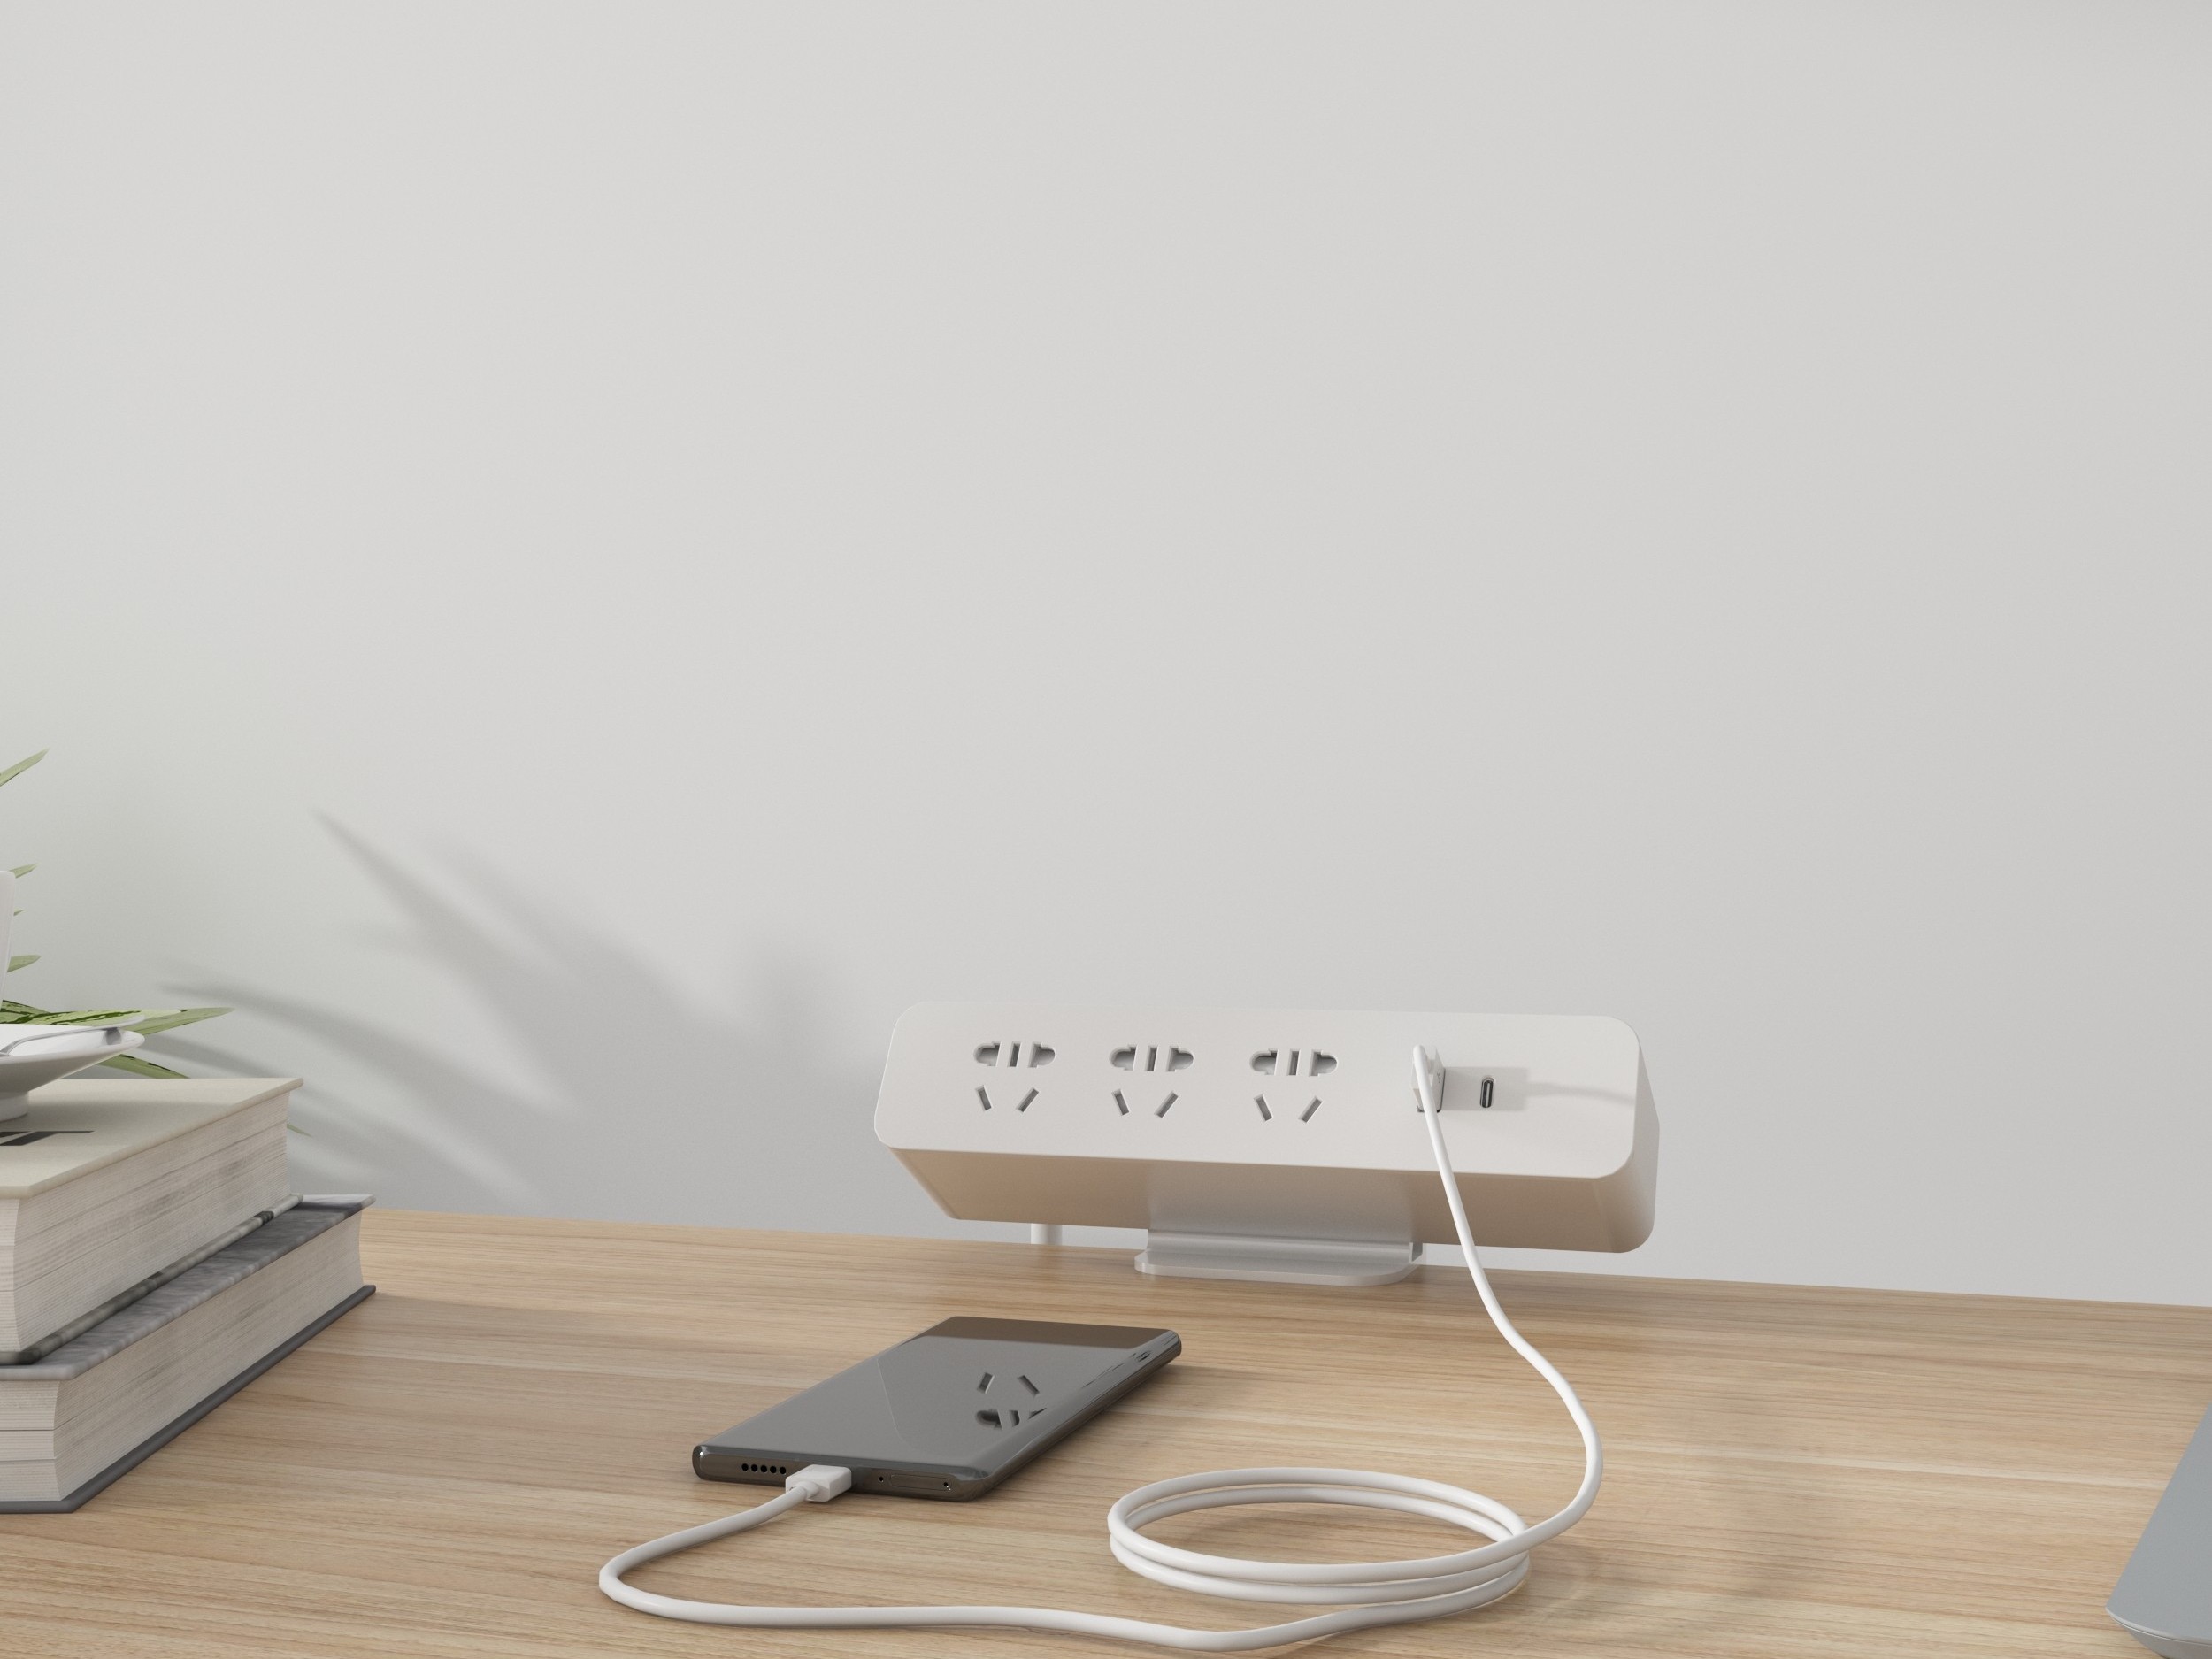 奥美丽办公家具原创设计的Mero电源插座 ——高颜值的用电安全卫士